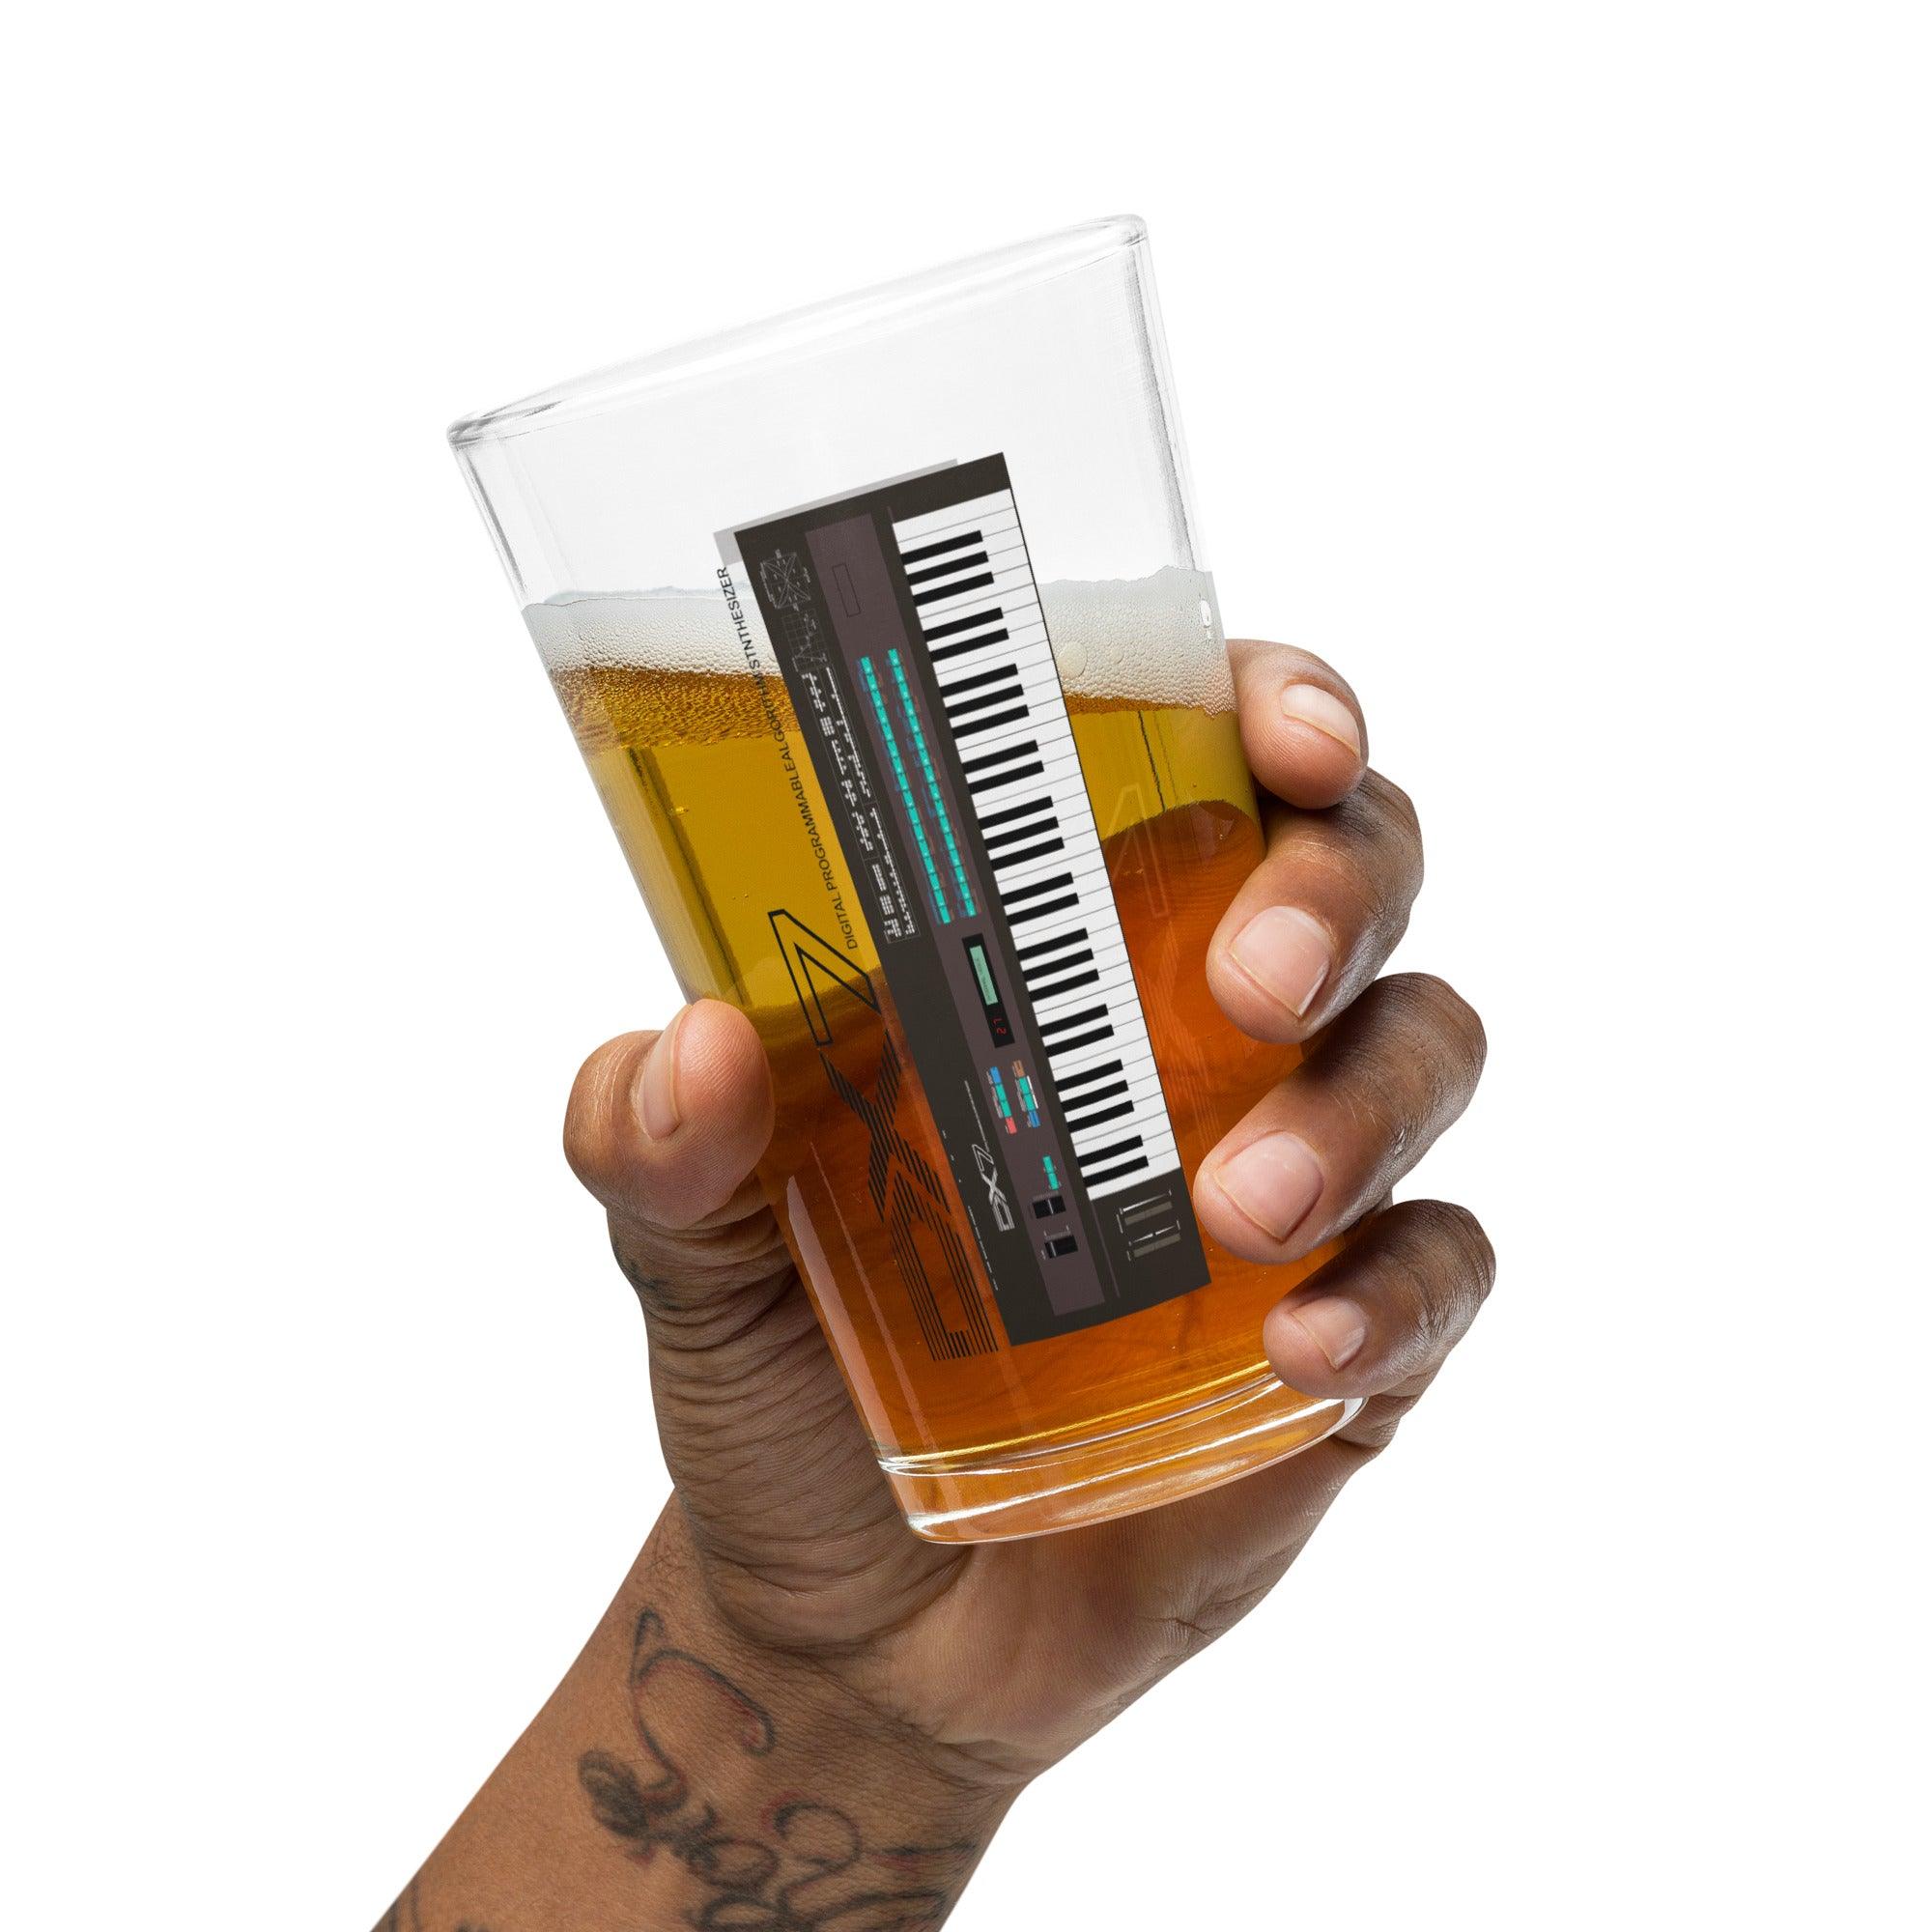 Yamaha DX7 Keyboard Artist Rendition Shaker Pint Glass (16 oz.) - Tedeschi Studio, LLC.